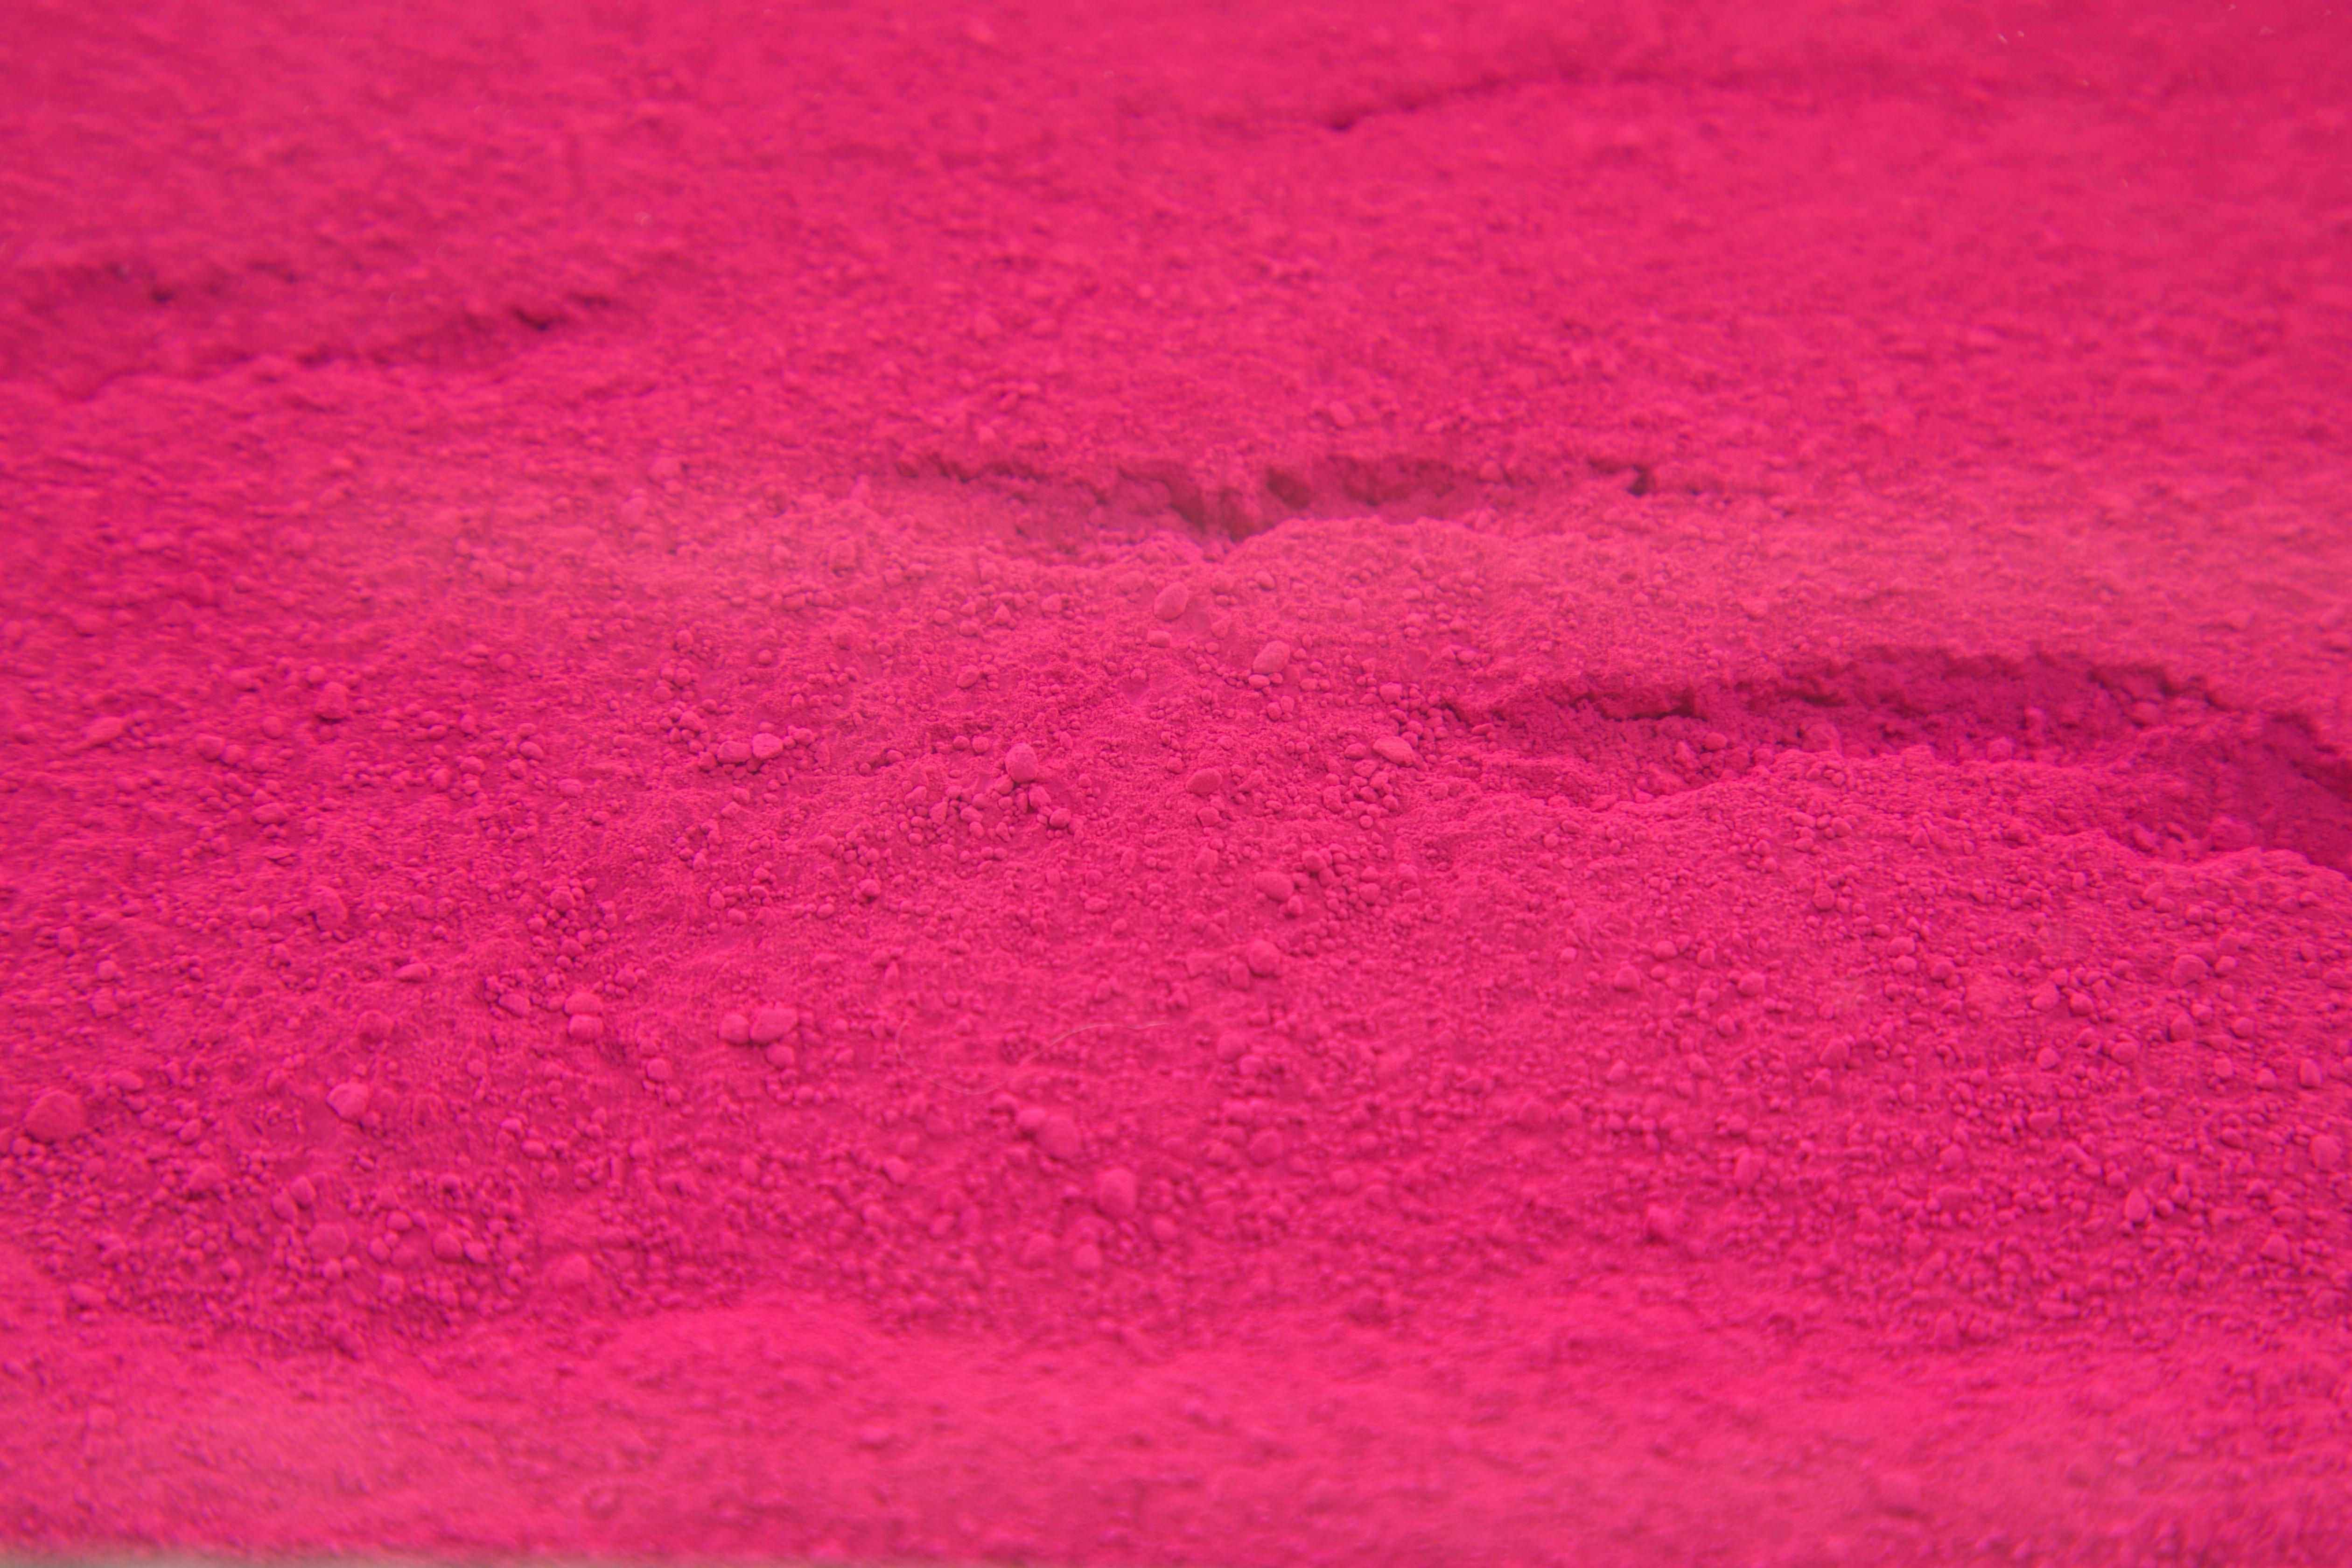 Table de cocktail en pigments roses 'Monopink' de Yves Klein, 1961 / 1963, signée  10